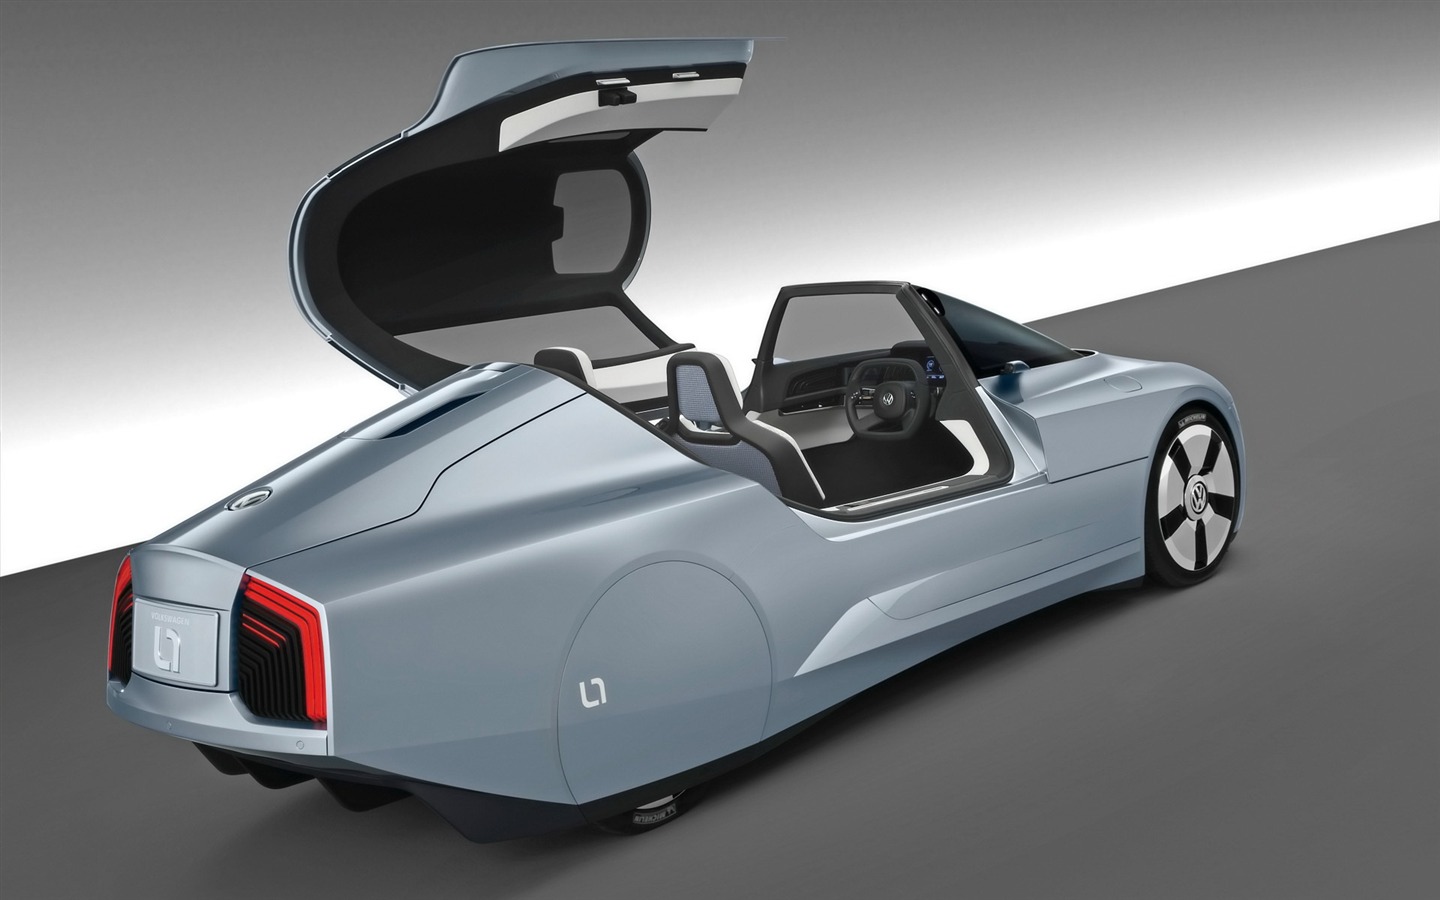 Fonds d'écran de voitures Volkswagen L1 Concept #24 - 1440x900